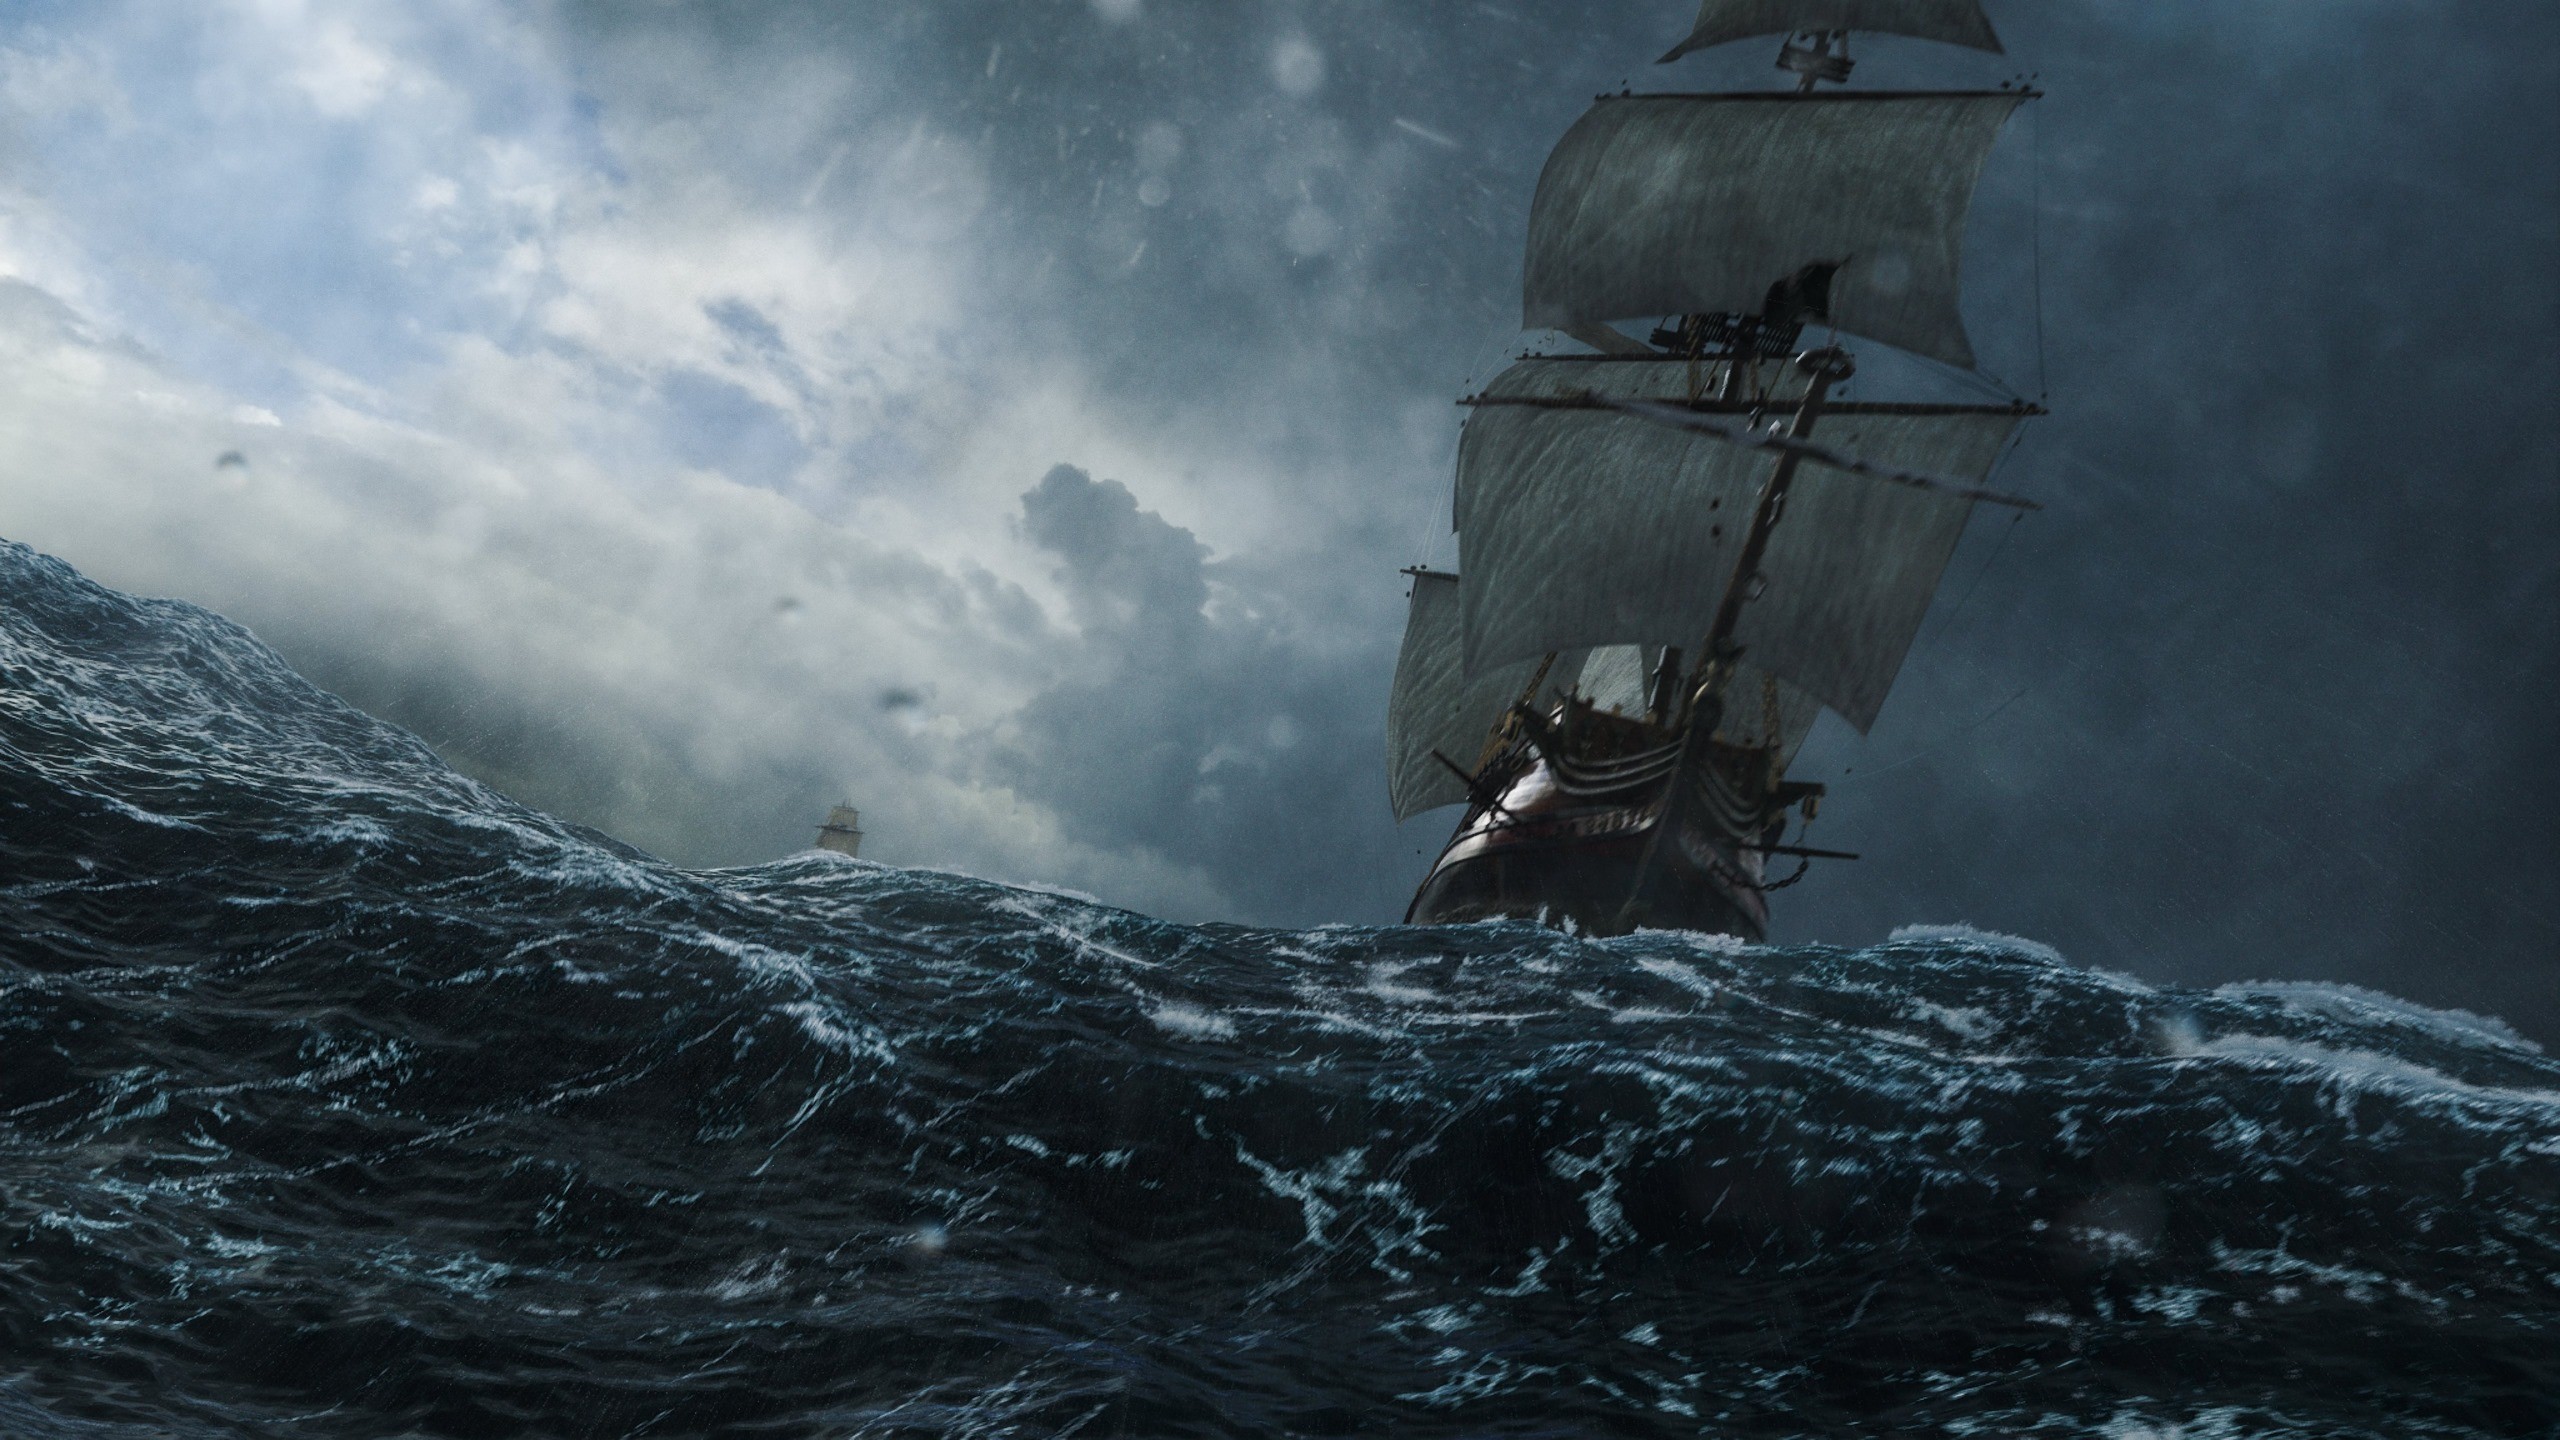 General 2560x1440 sea ship sailing ship sky storm Black Sails digital art CGI